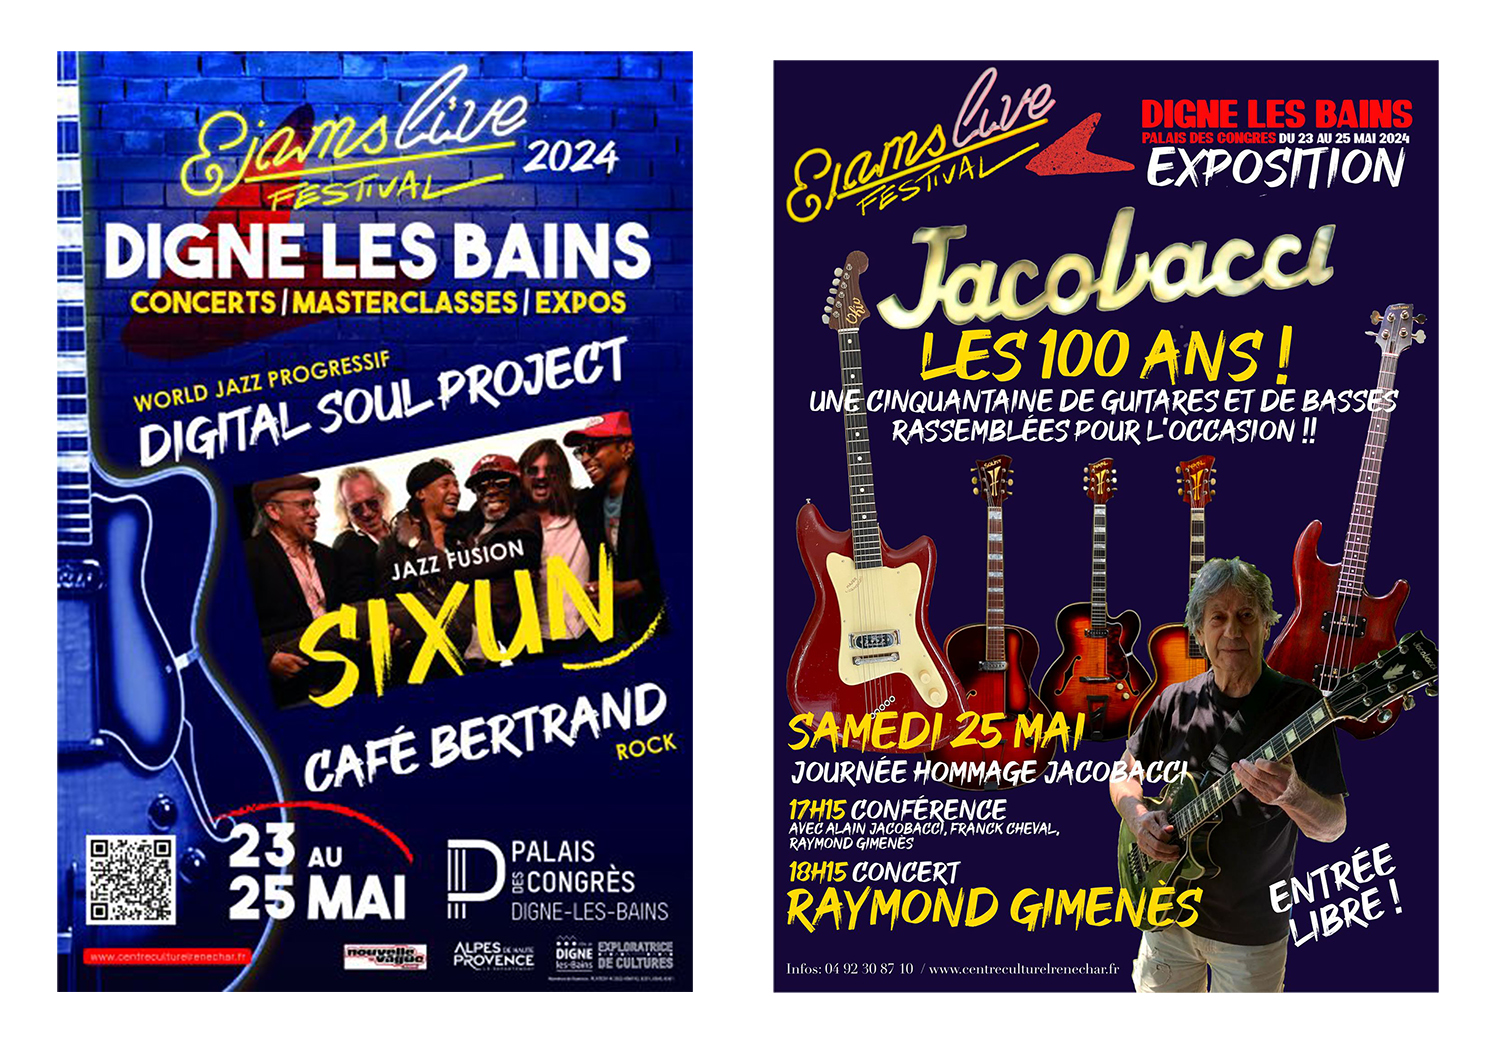 L'exposition de guitare JACOBACCI (les 100 ans) et le Festival Ejamslive du 23 au 25 mai 2024